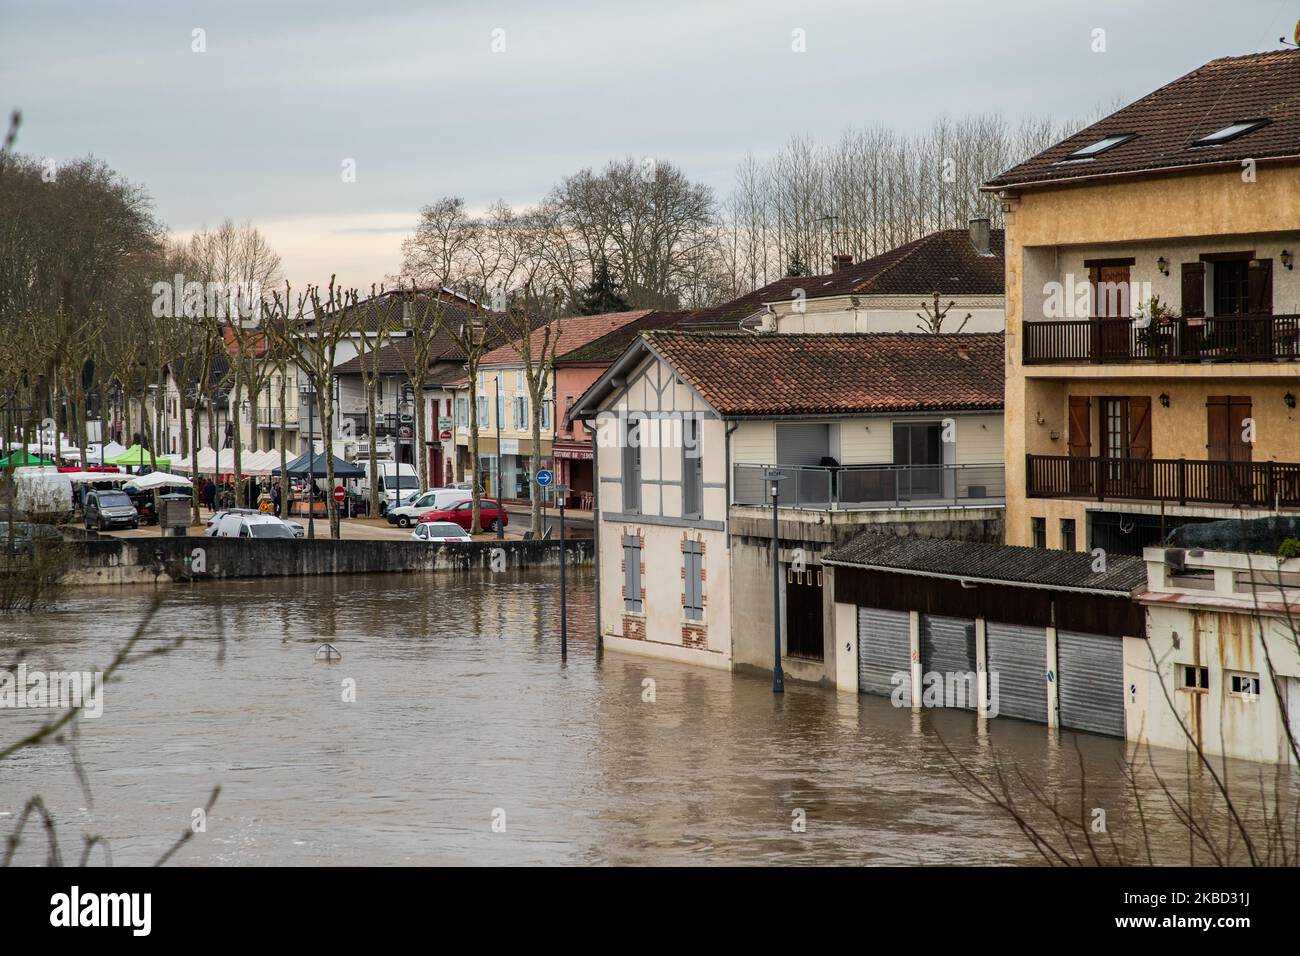 La rivière 'la midouze' est en crue le 16 décembre 2019 dans le centre-ville de Tartas, dans le sud-ouest de la France. Les rivières inondées 'l'adour' et 'la midouze' débordent encore dans les 'les landes' dans le sud-ouest de la France touchant la ville de Dax et le village d'Onard où un homme mort a été trouvé hier dans sa voiture après qu'il s'est écrasé d'une route inondée. De nombreuses routes ont été fermées, en particulier celles qui traversaient les rivières, et certaines maisons ont été inondées. (Photo de Jerome Gilles/NurPhoto) Banque D'Images